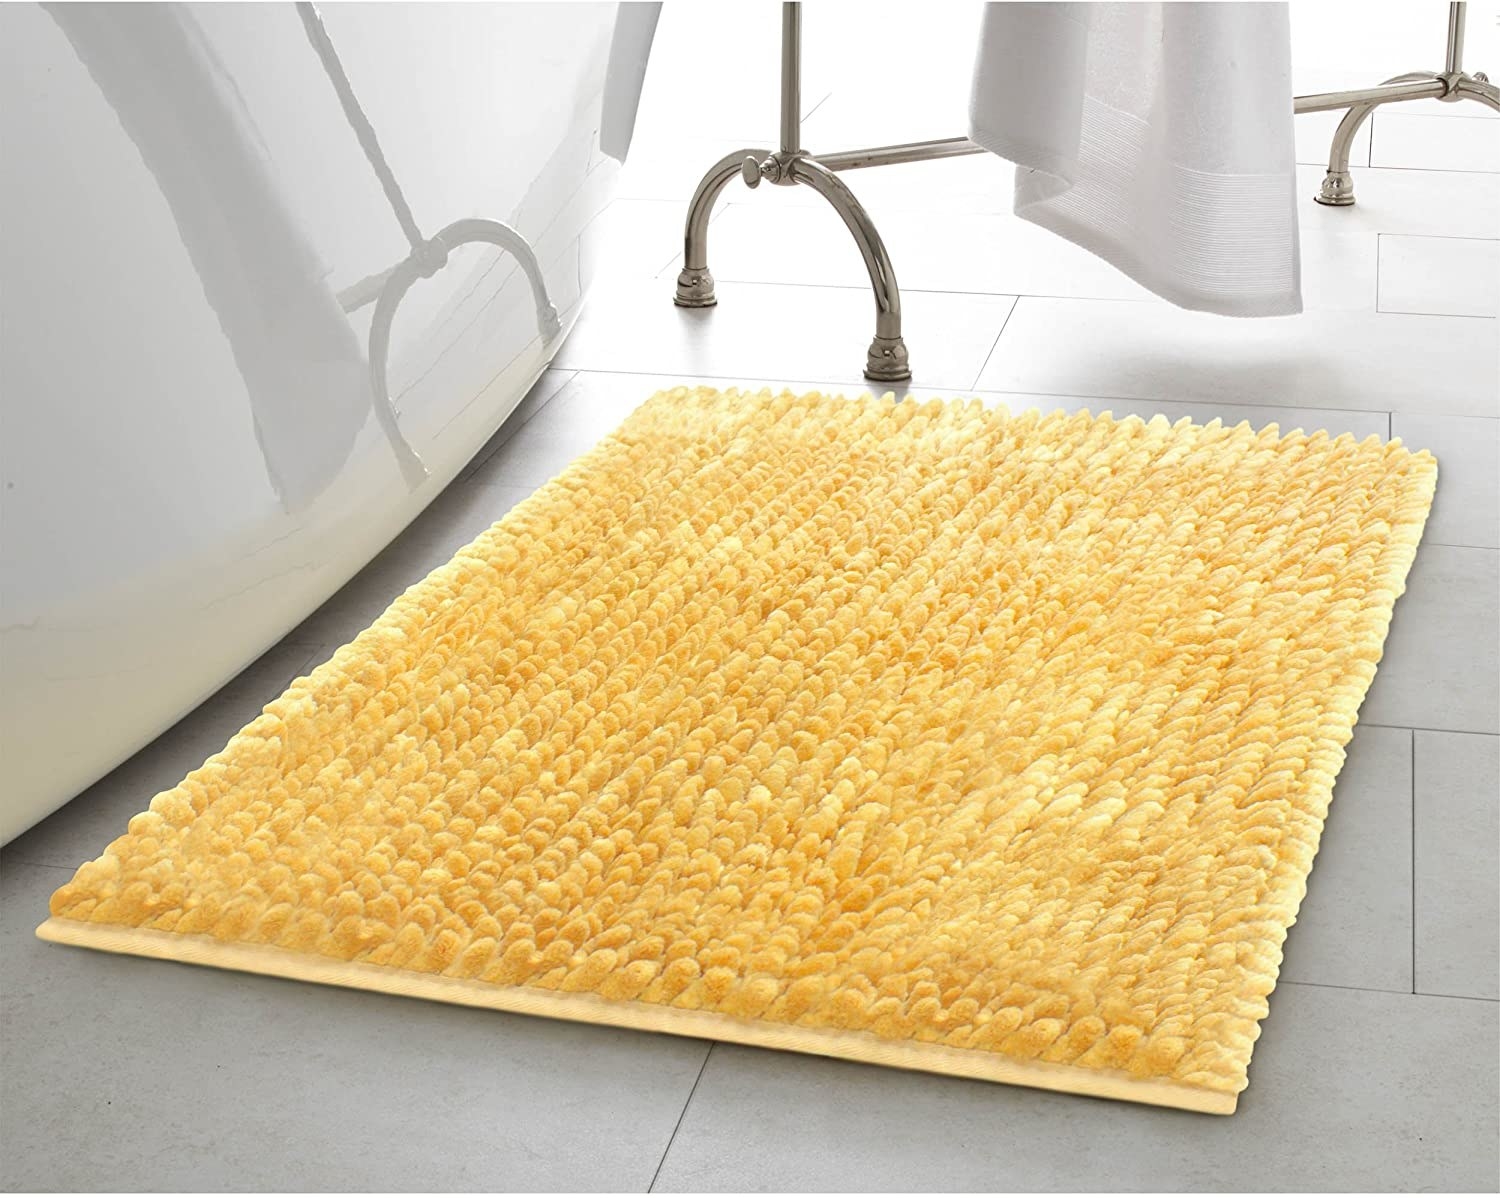 A bath mat 